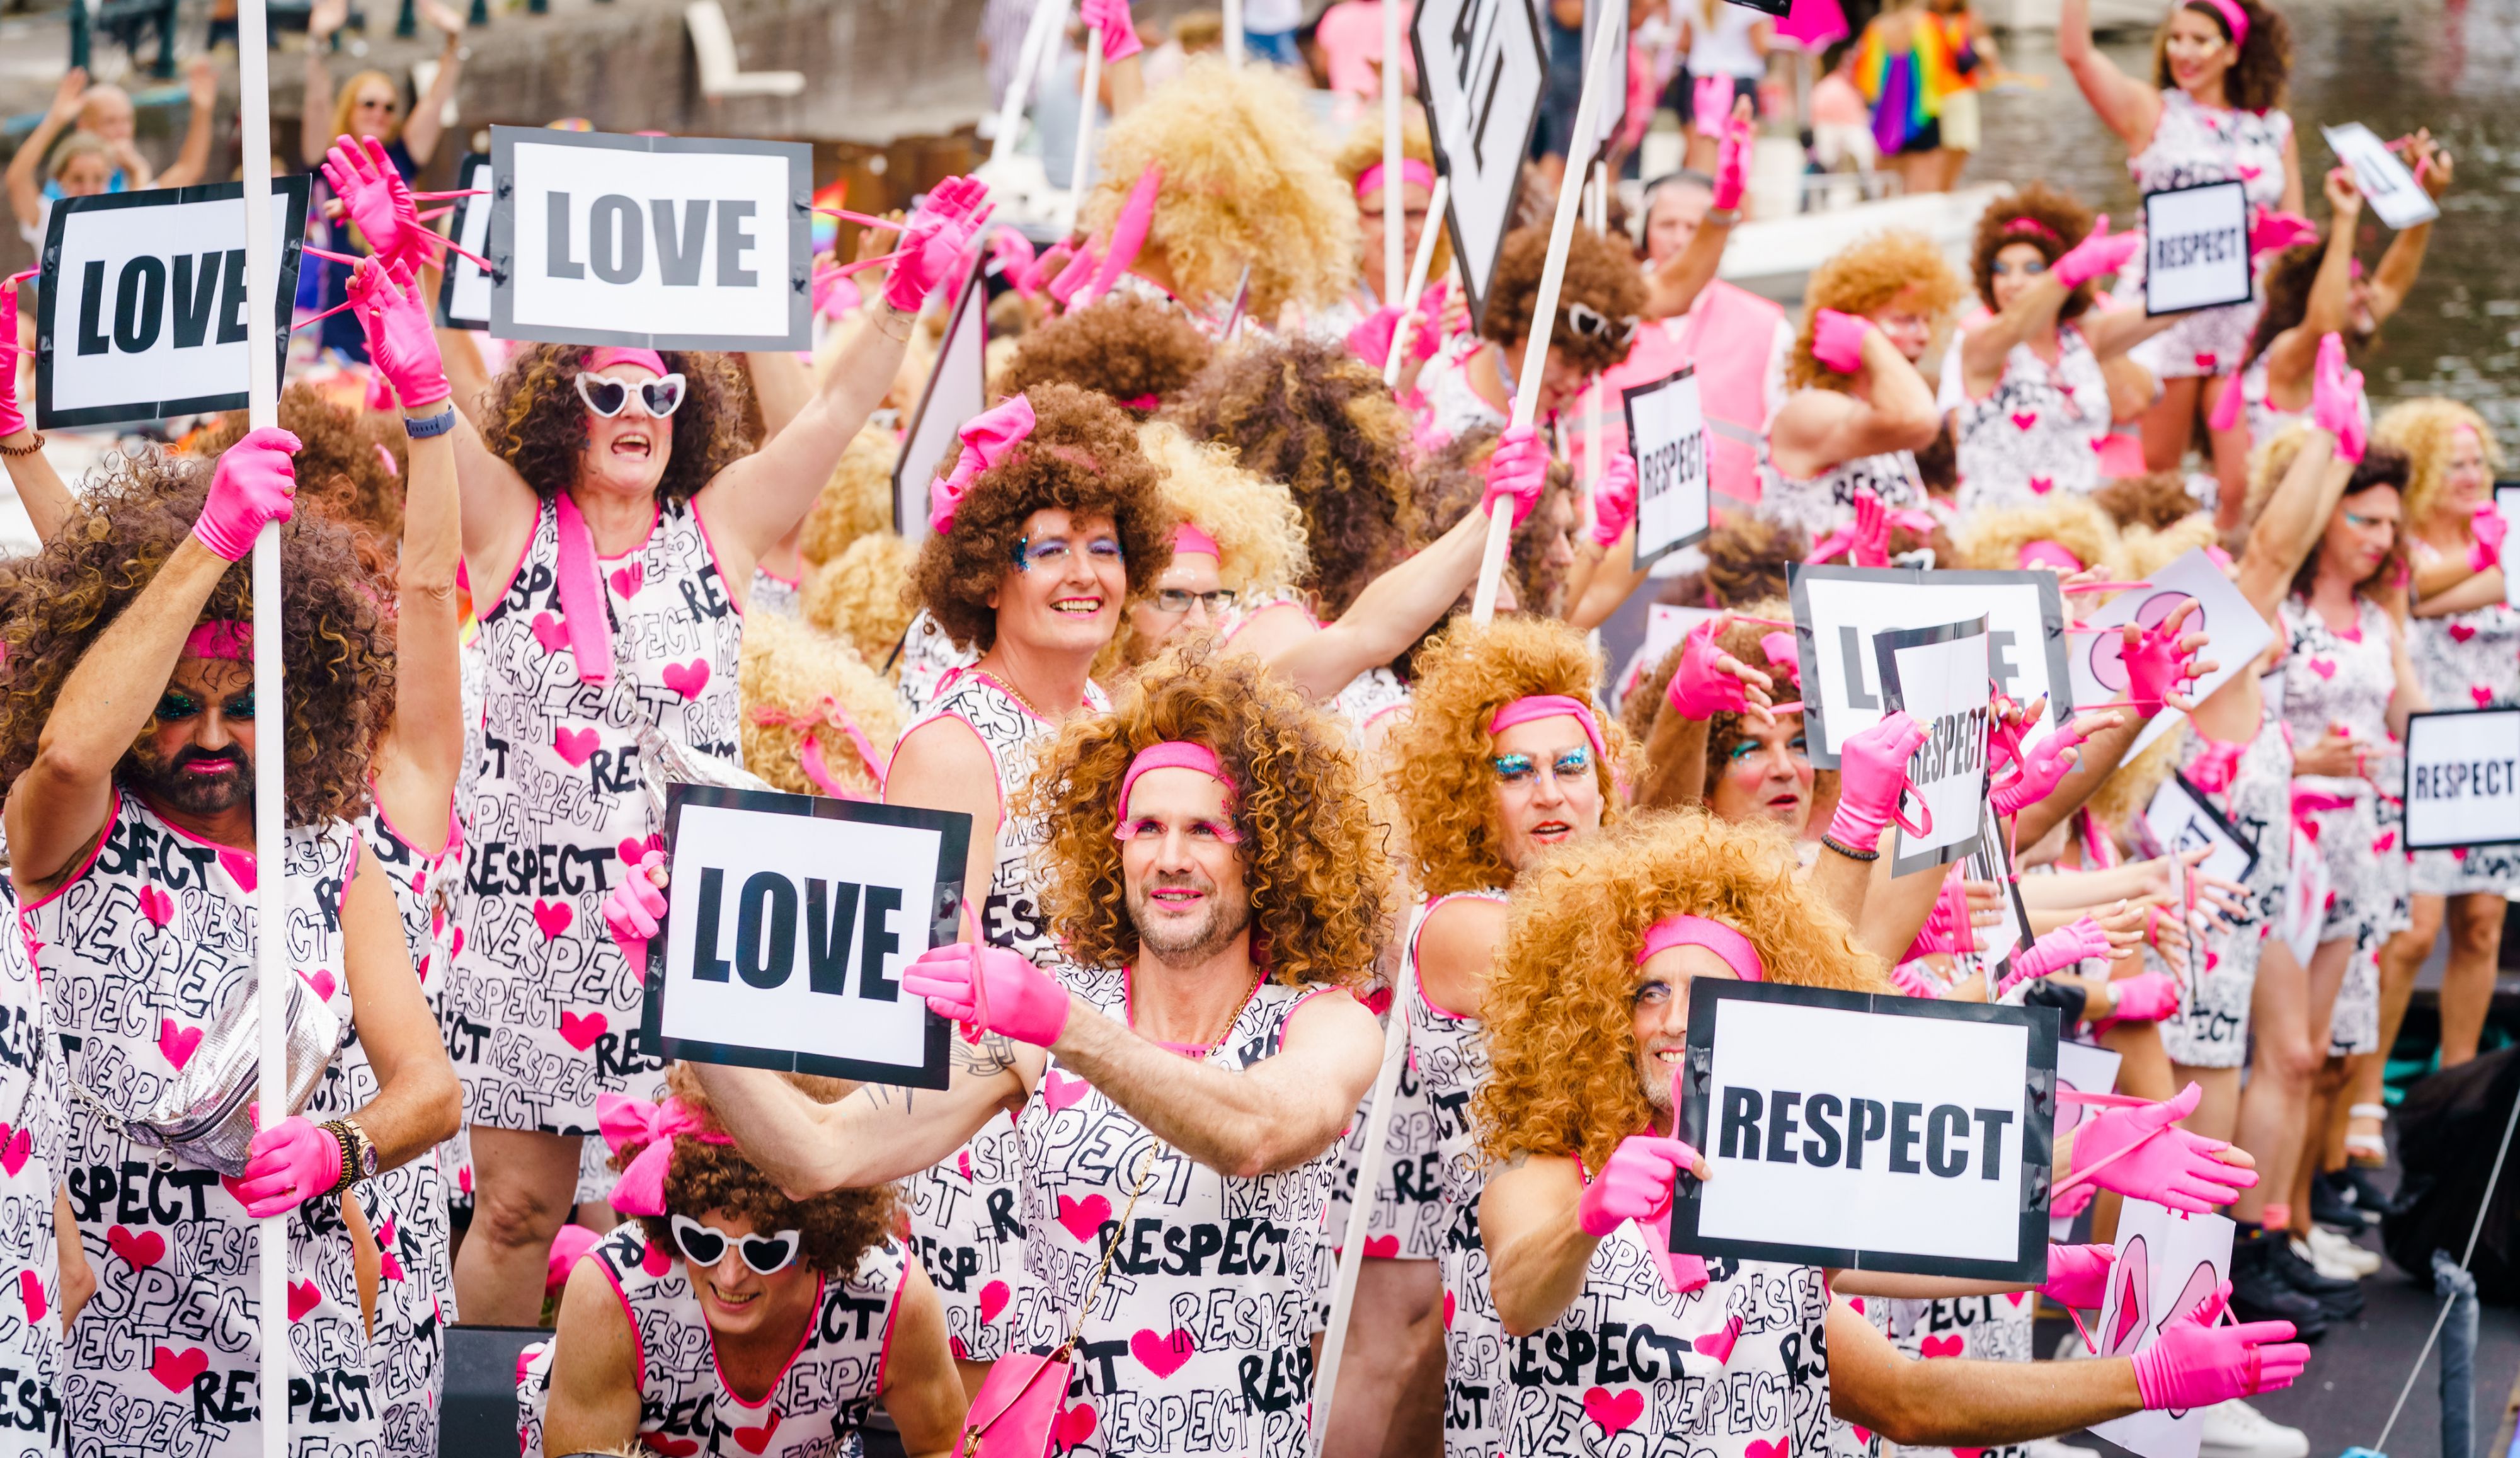 Canal Pride Amsterdam apenpokkenvirus vlekkeloos verlopen'